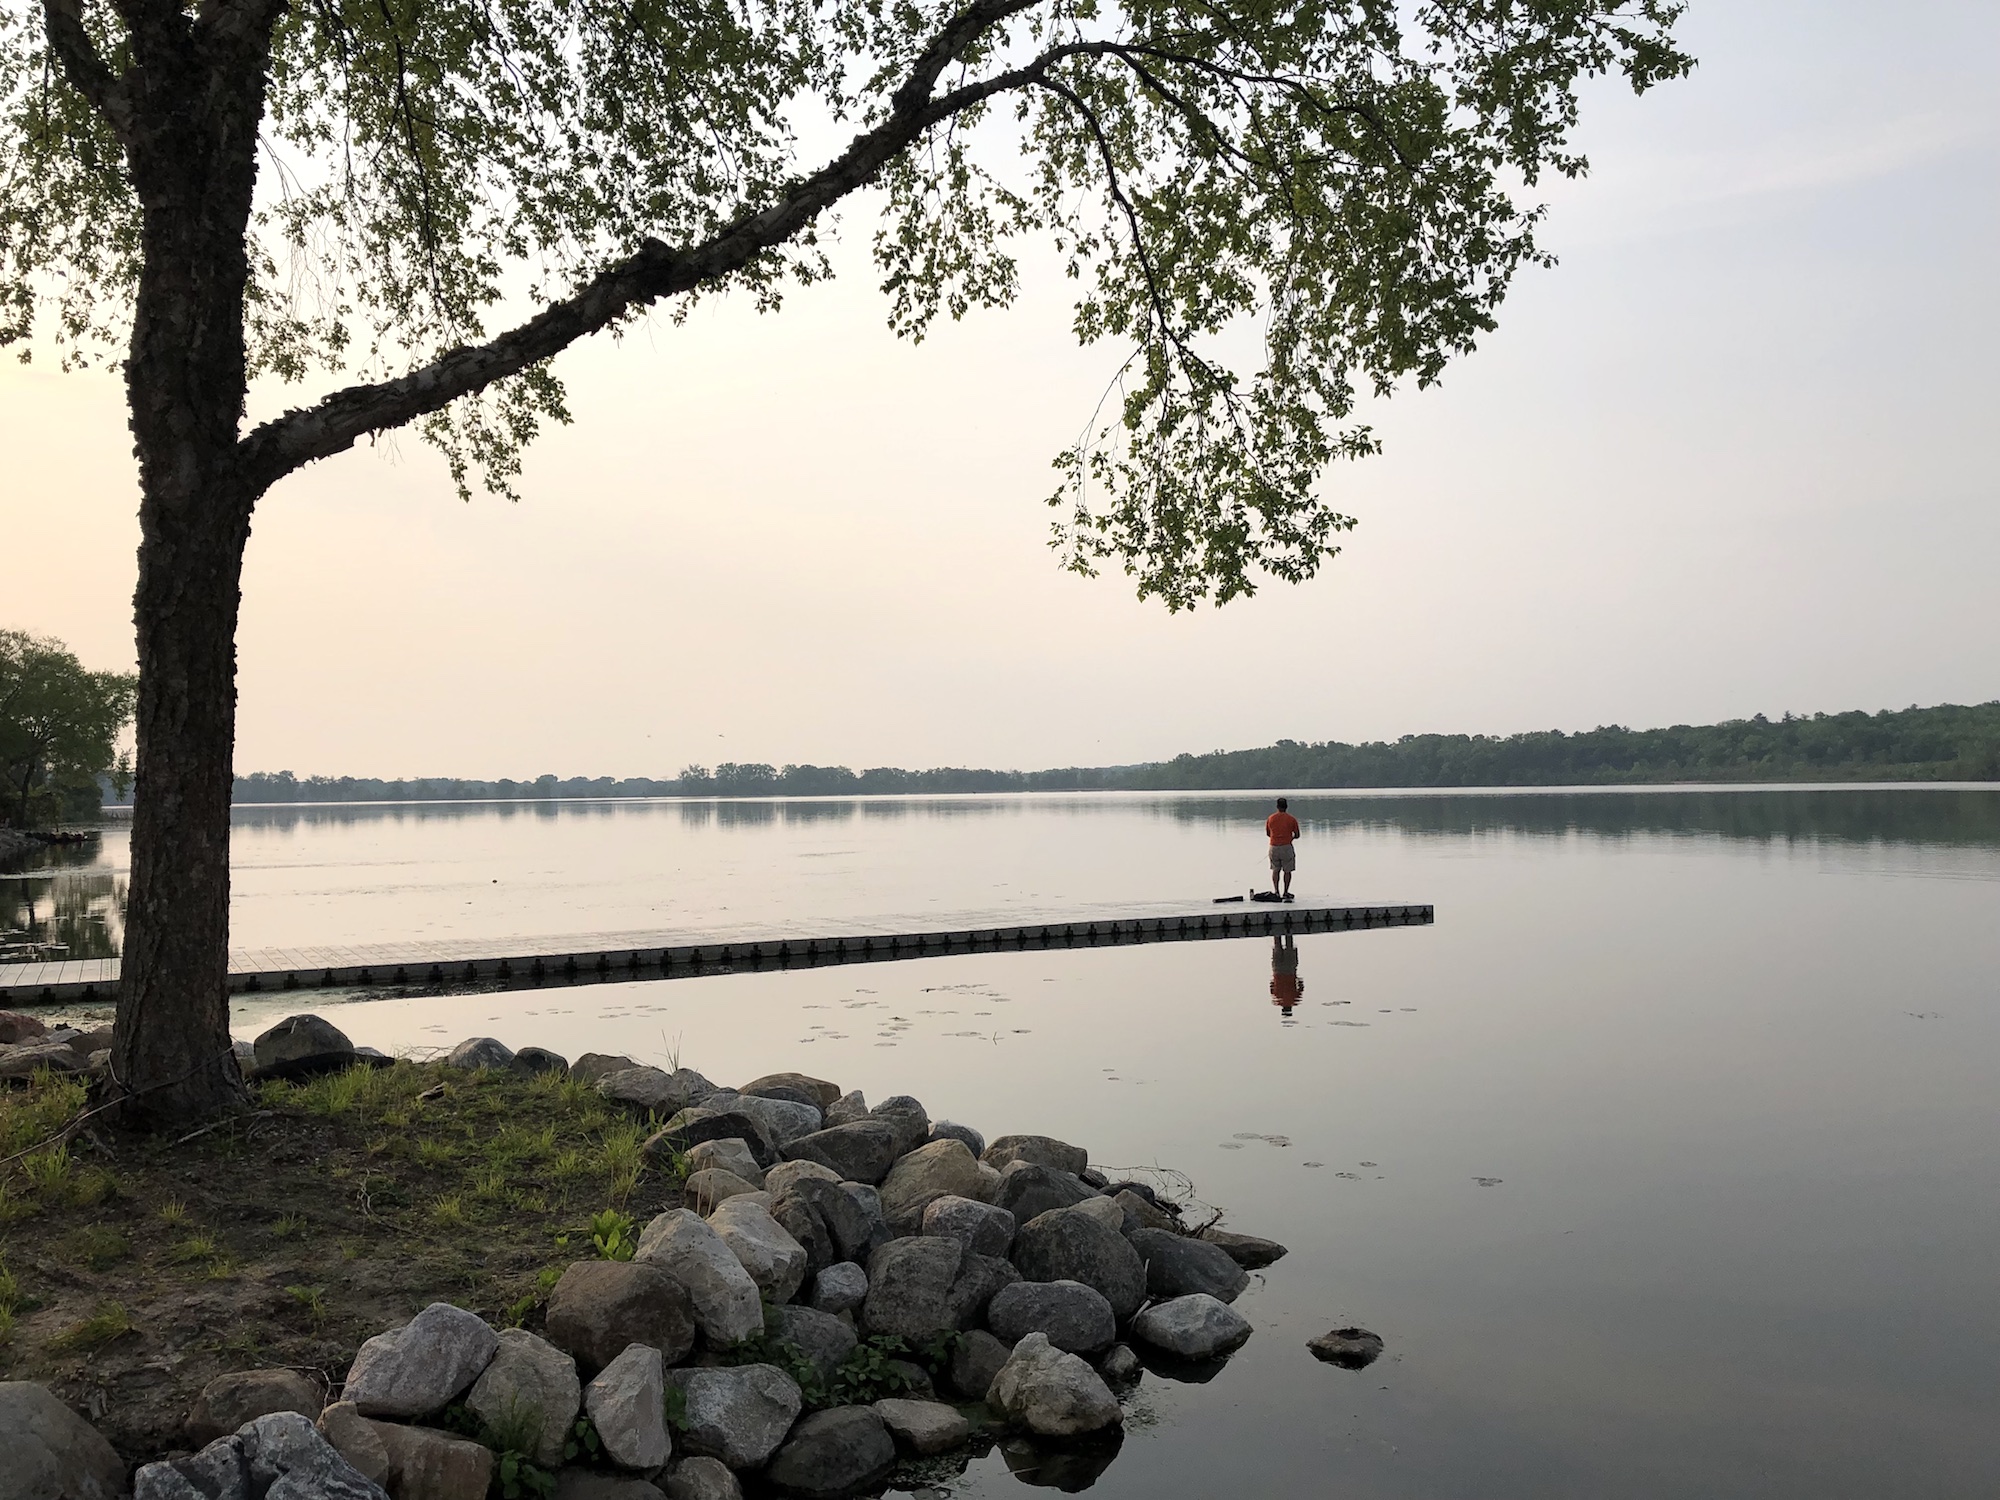 Lake Wingra on June 1, 2019.